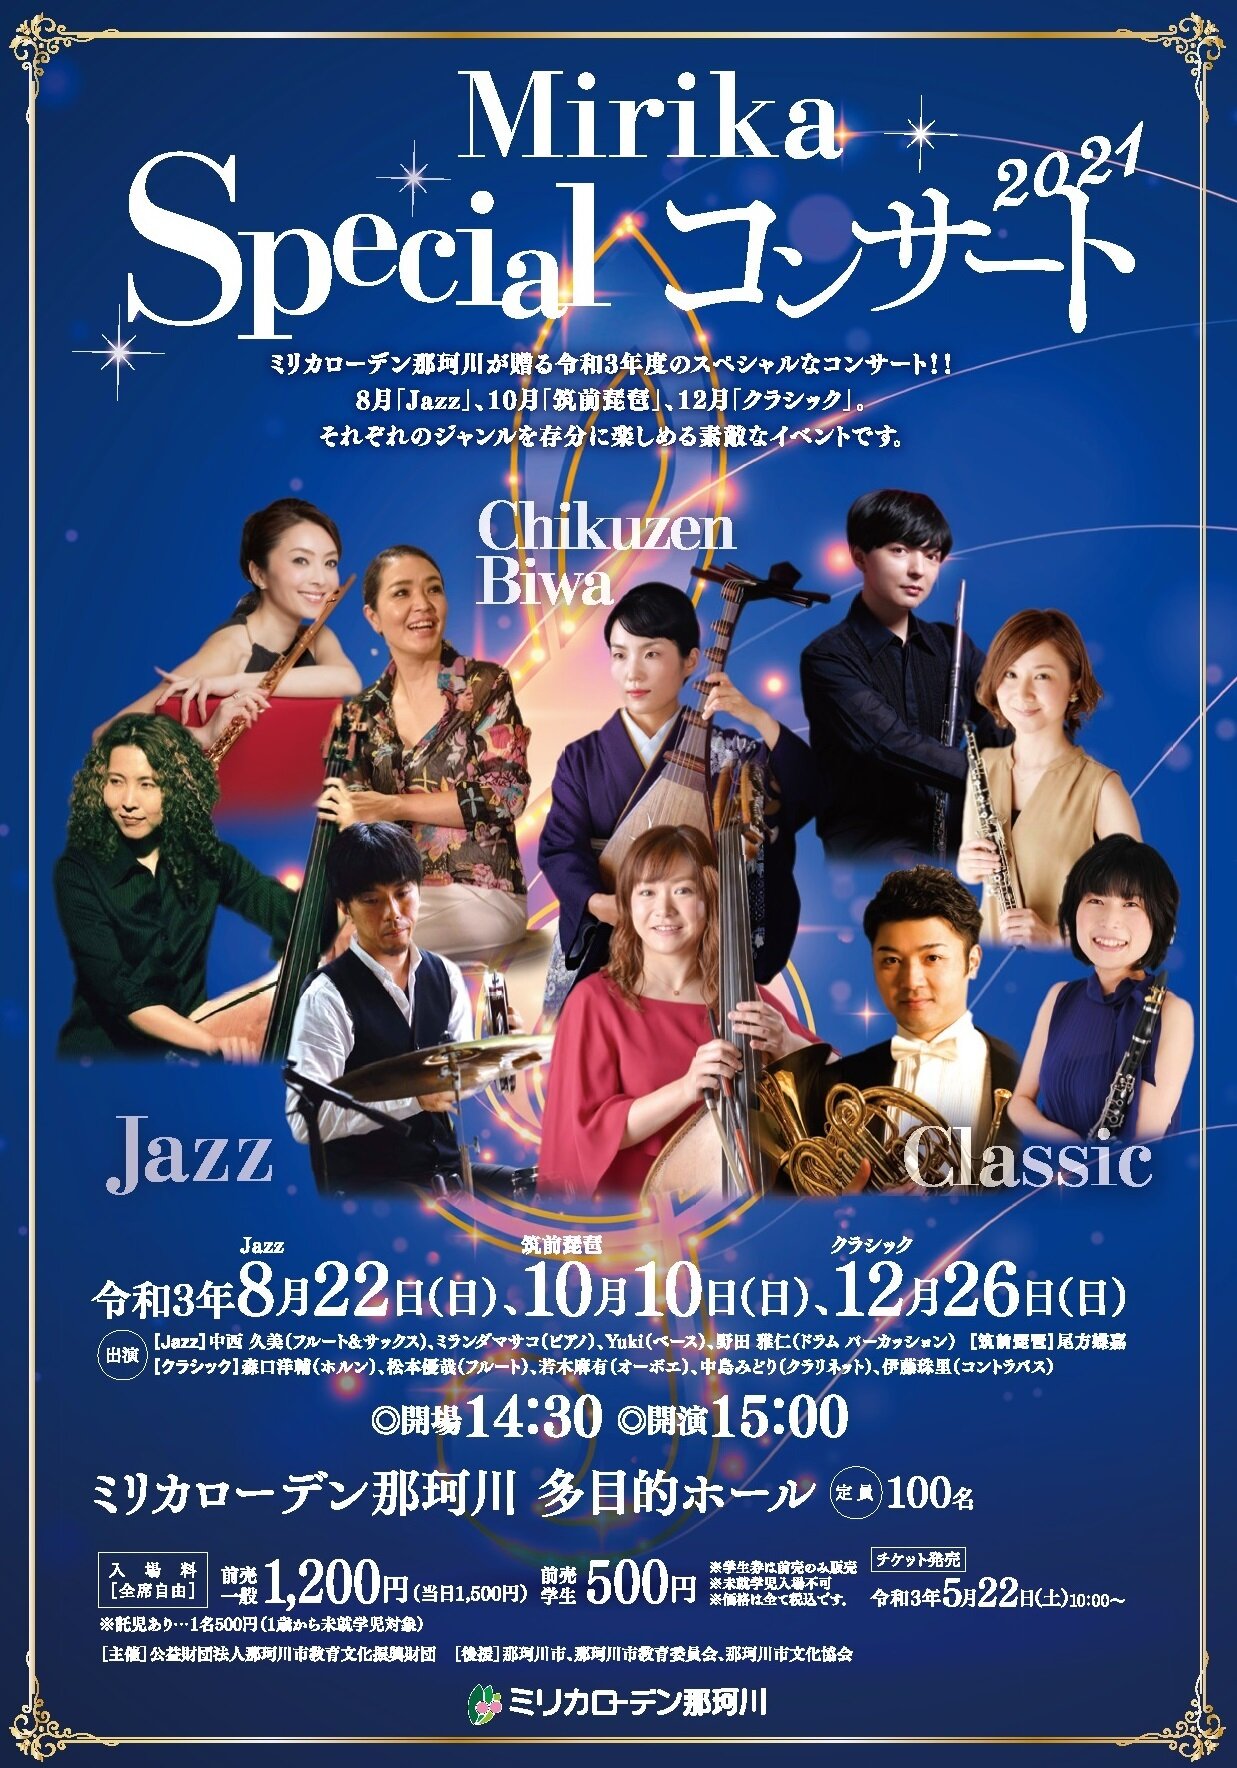 Mirika Specialコンサート JAZZ公演 